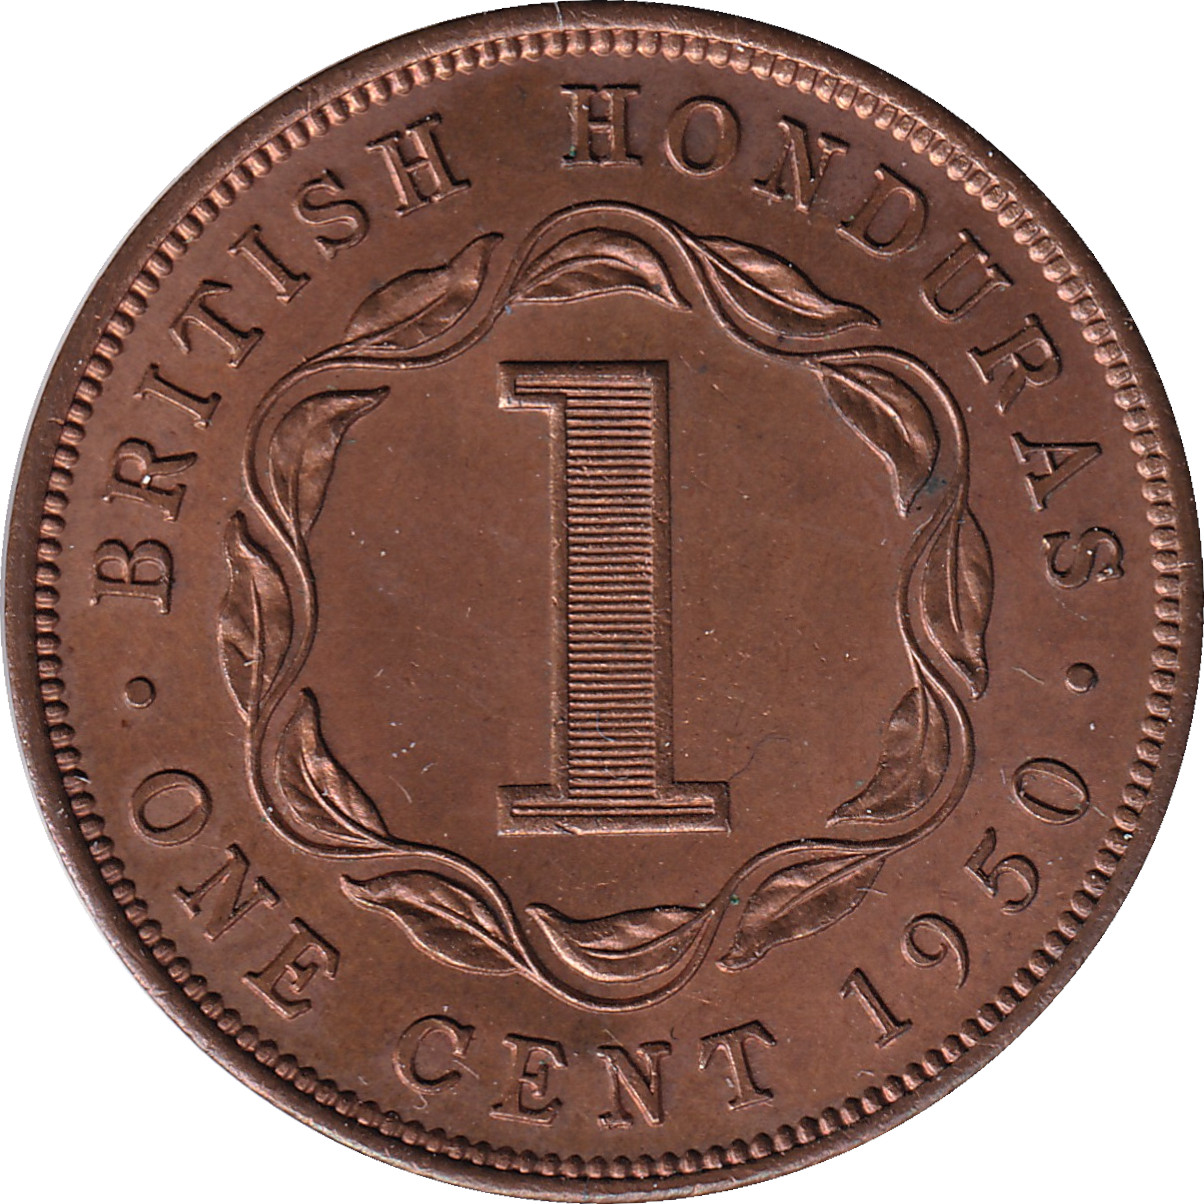 1 cent - Georges VI